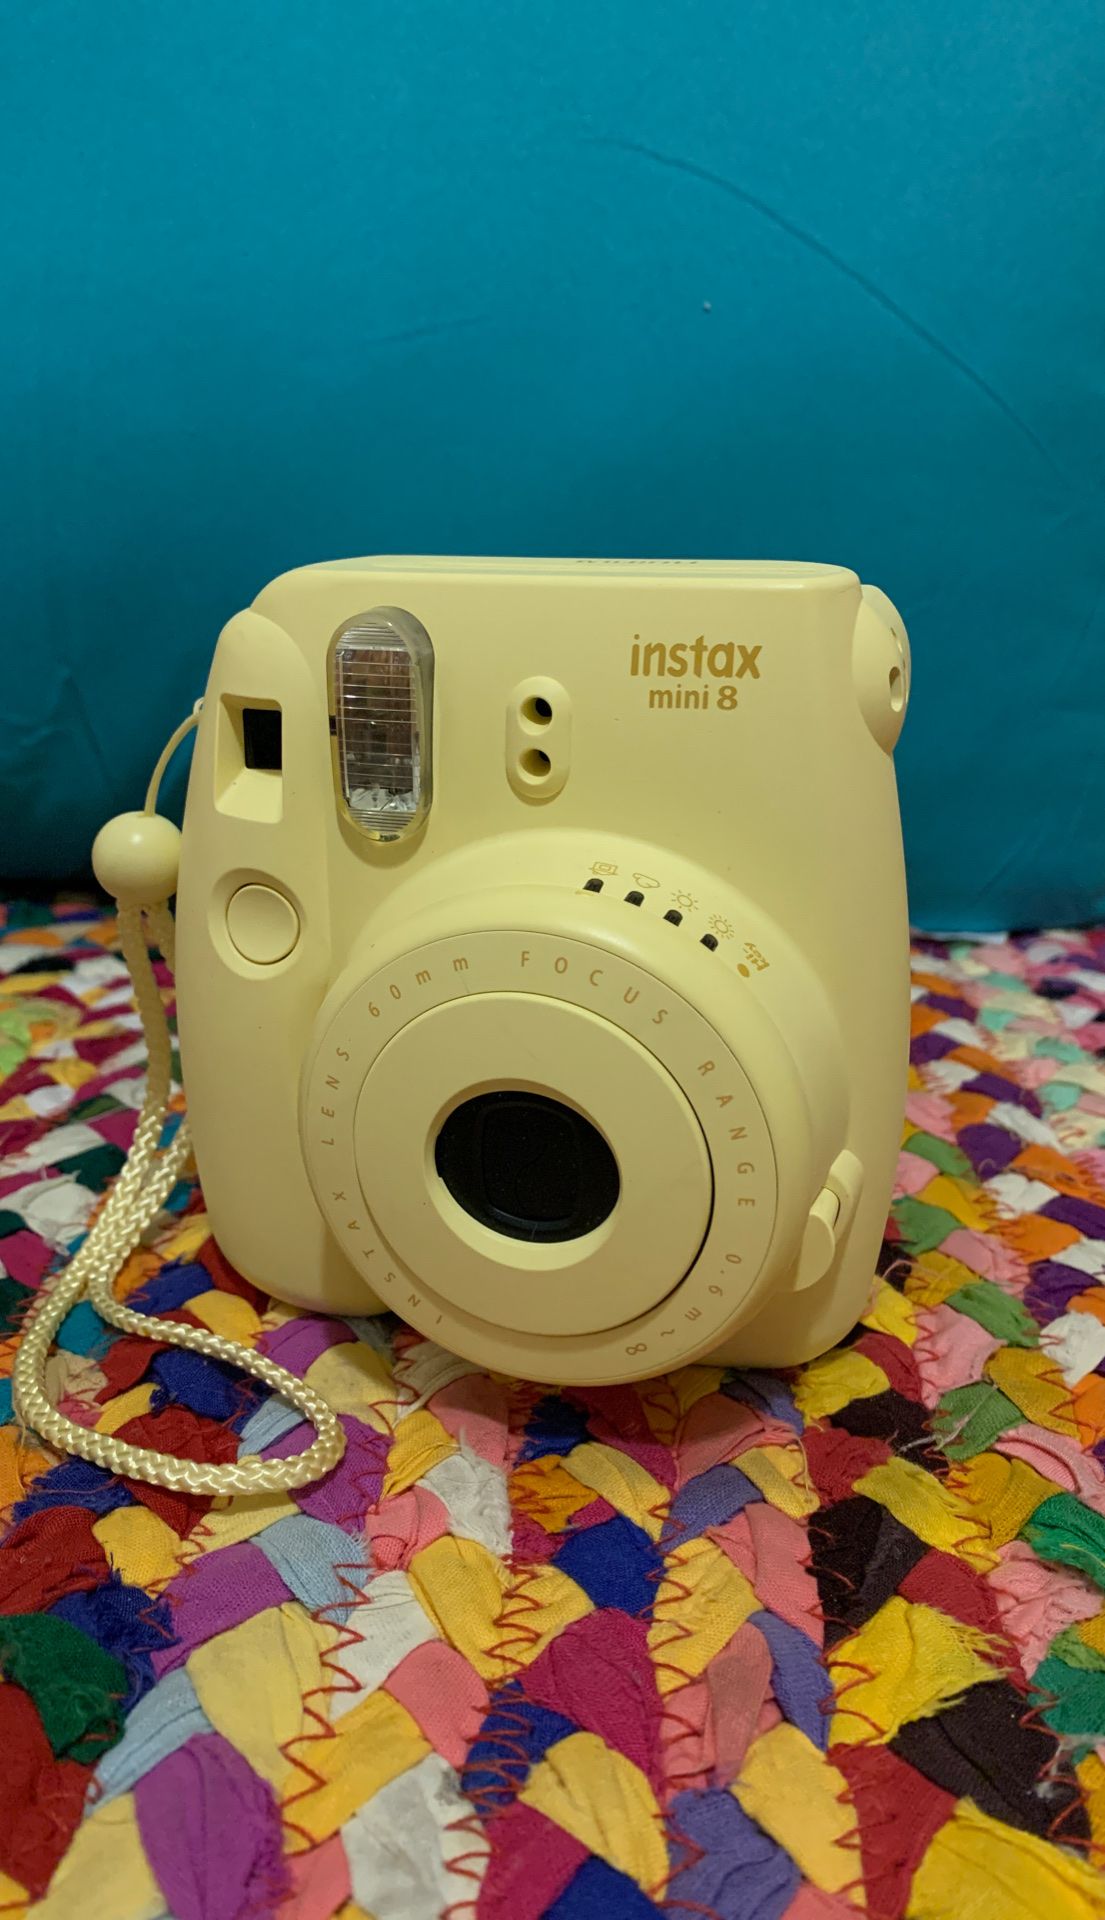 Instax camera mini 8